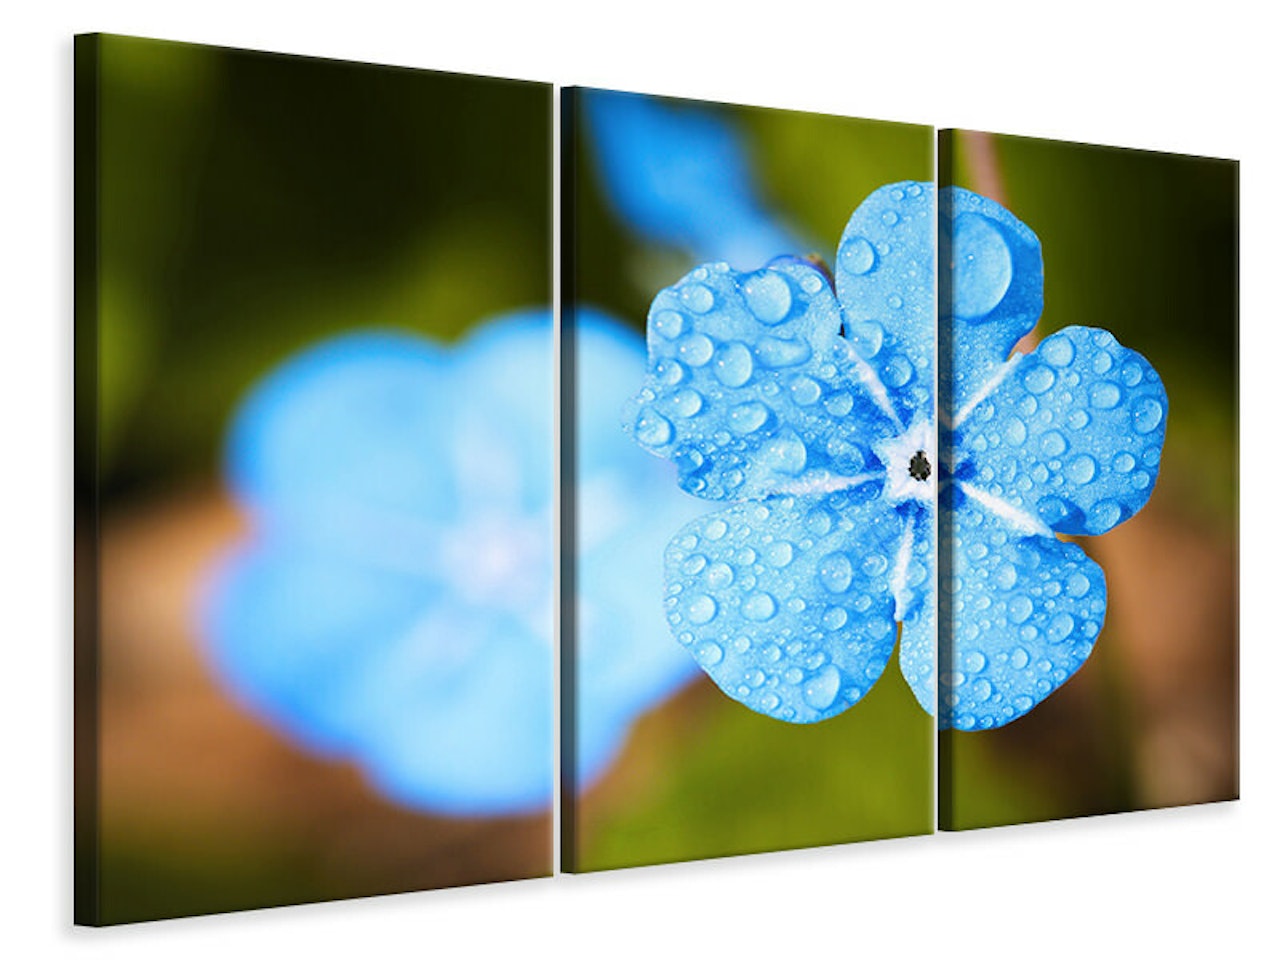 Ljuddämpande tavla -  Blue flower with morning dew